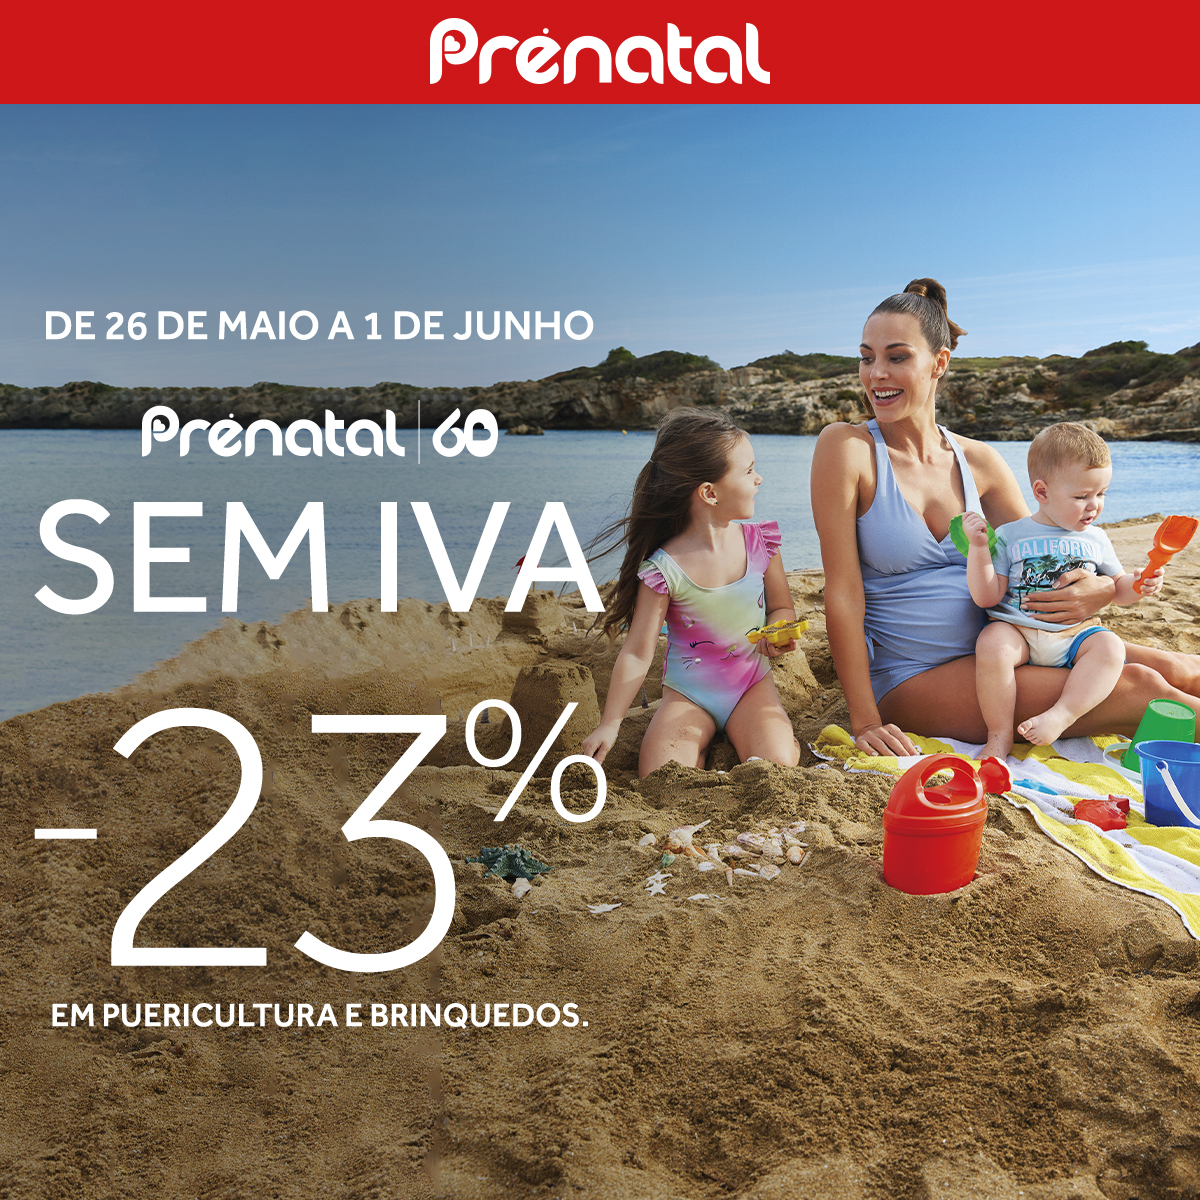 Começa a semana SEM IVA da Prénatal! -23% em pue&#8230;